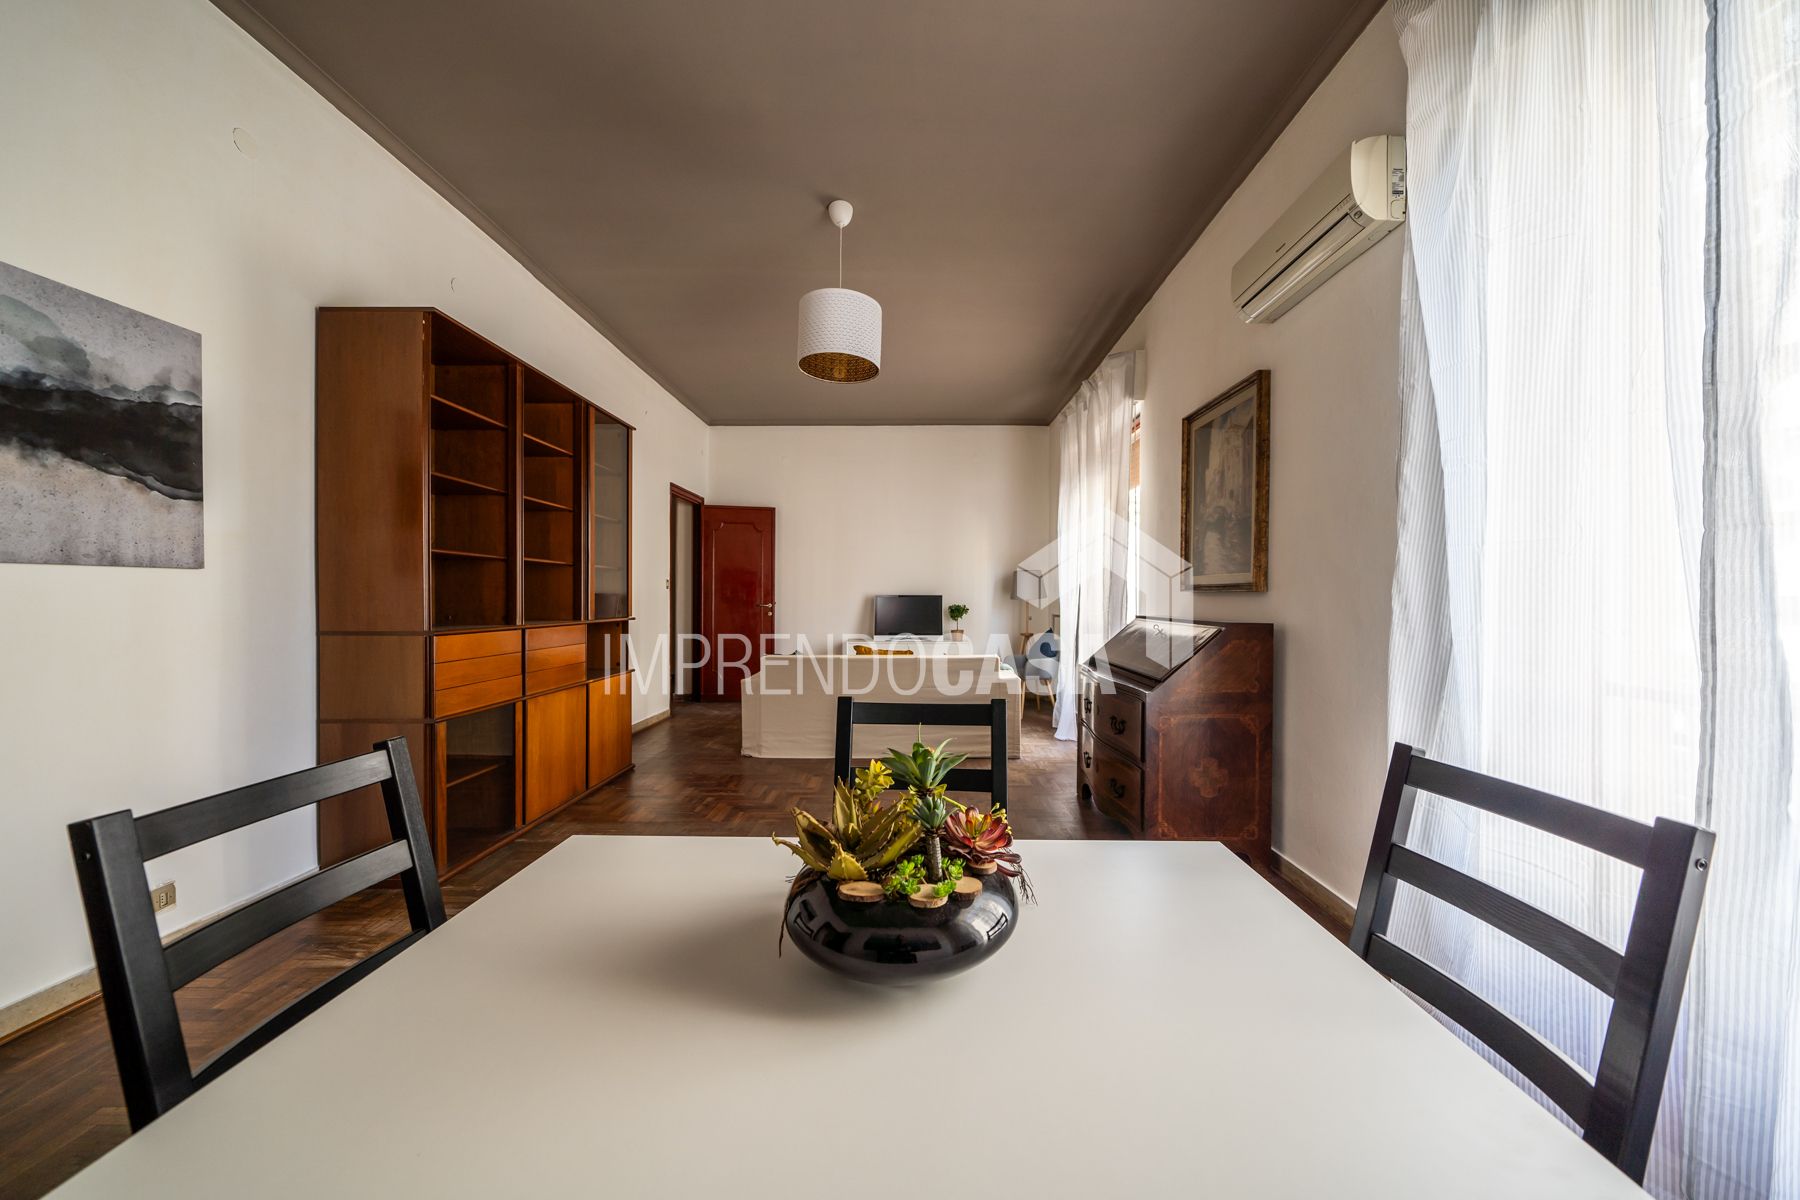 For sale apartment in city Palermo Sicilia